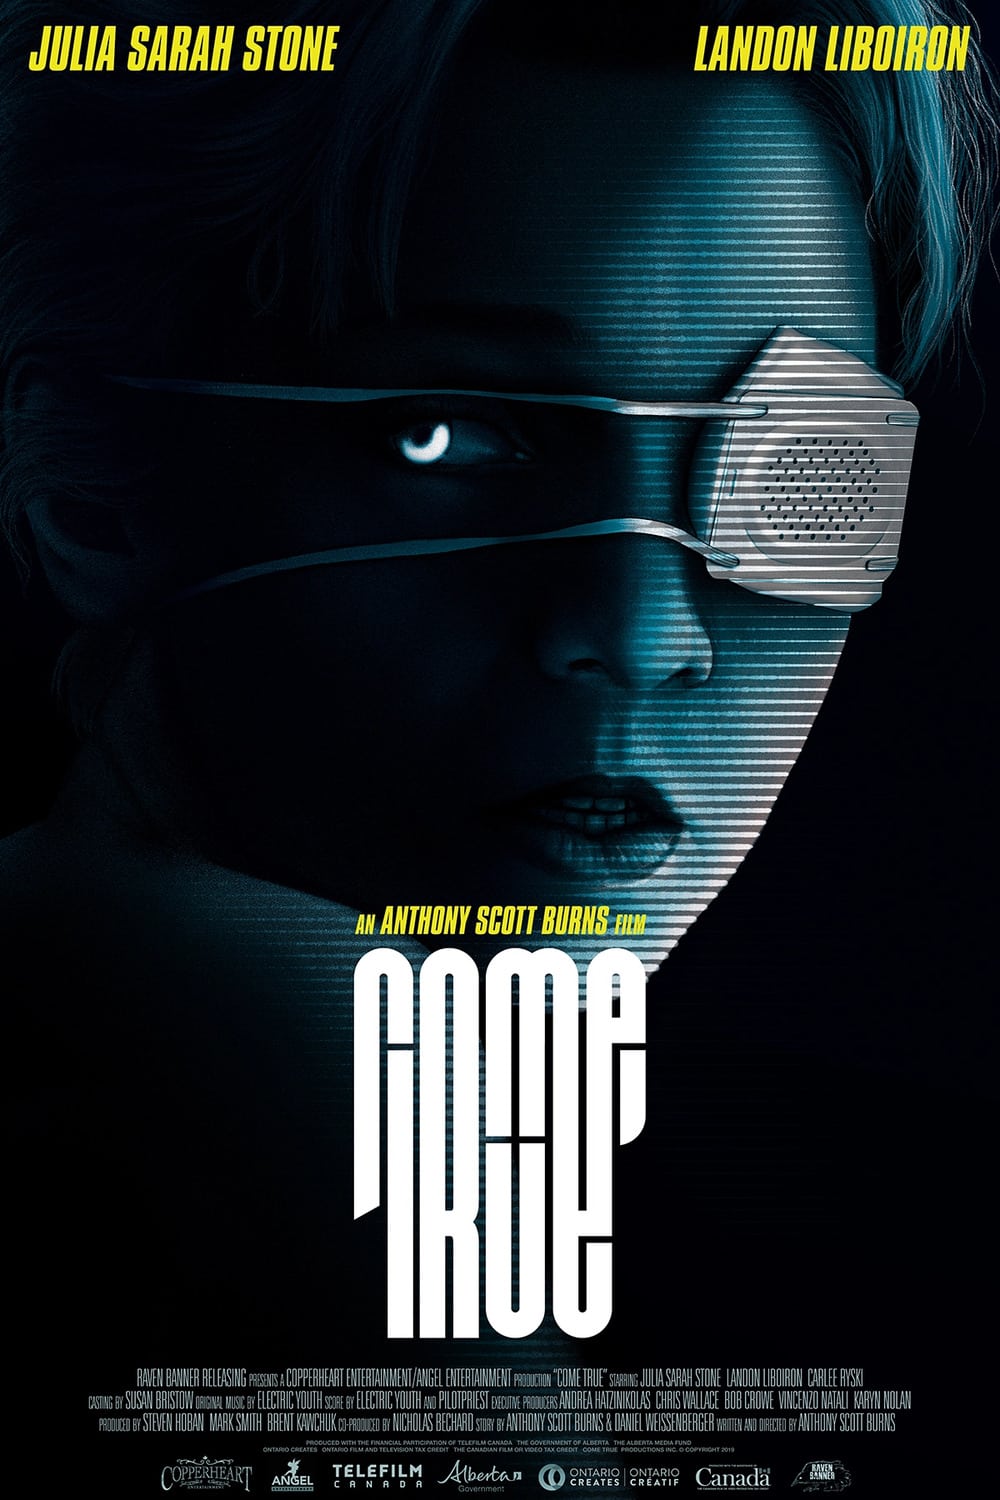 Poster de la película "Come True"